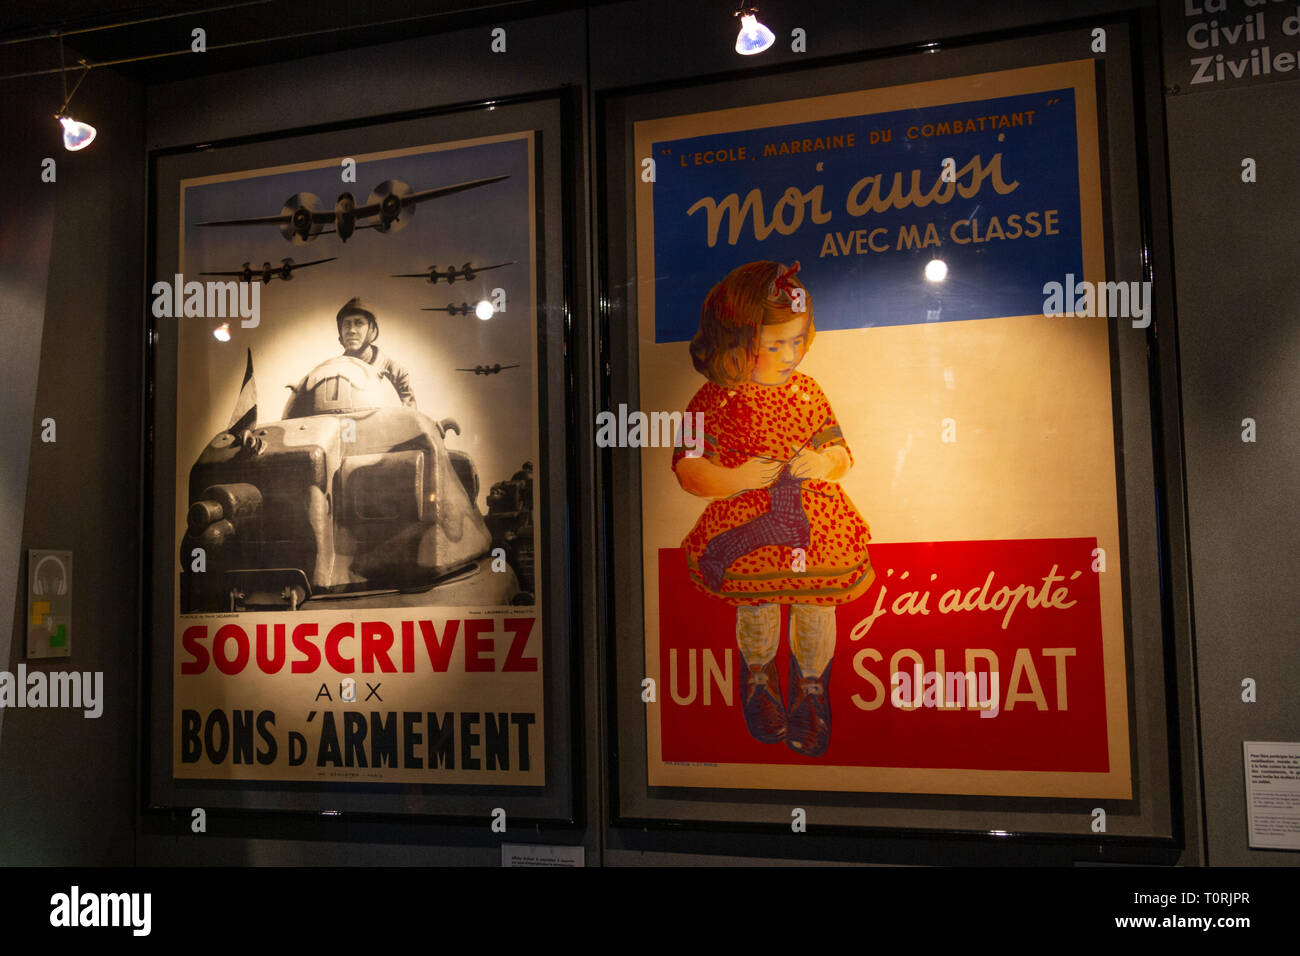 La Seconde Guerre mondiale, deux affiches française essaie de recueillir des fonds (des obligations de guerre) sur l'affichage au Mémorial de Caen (Mémorial de Caen), Normandie, France. Banque D'Images